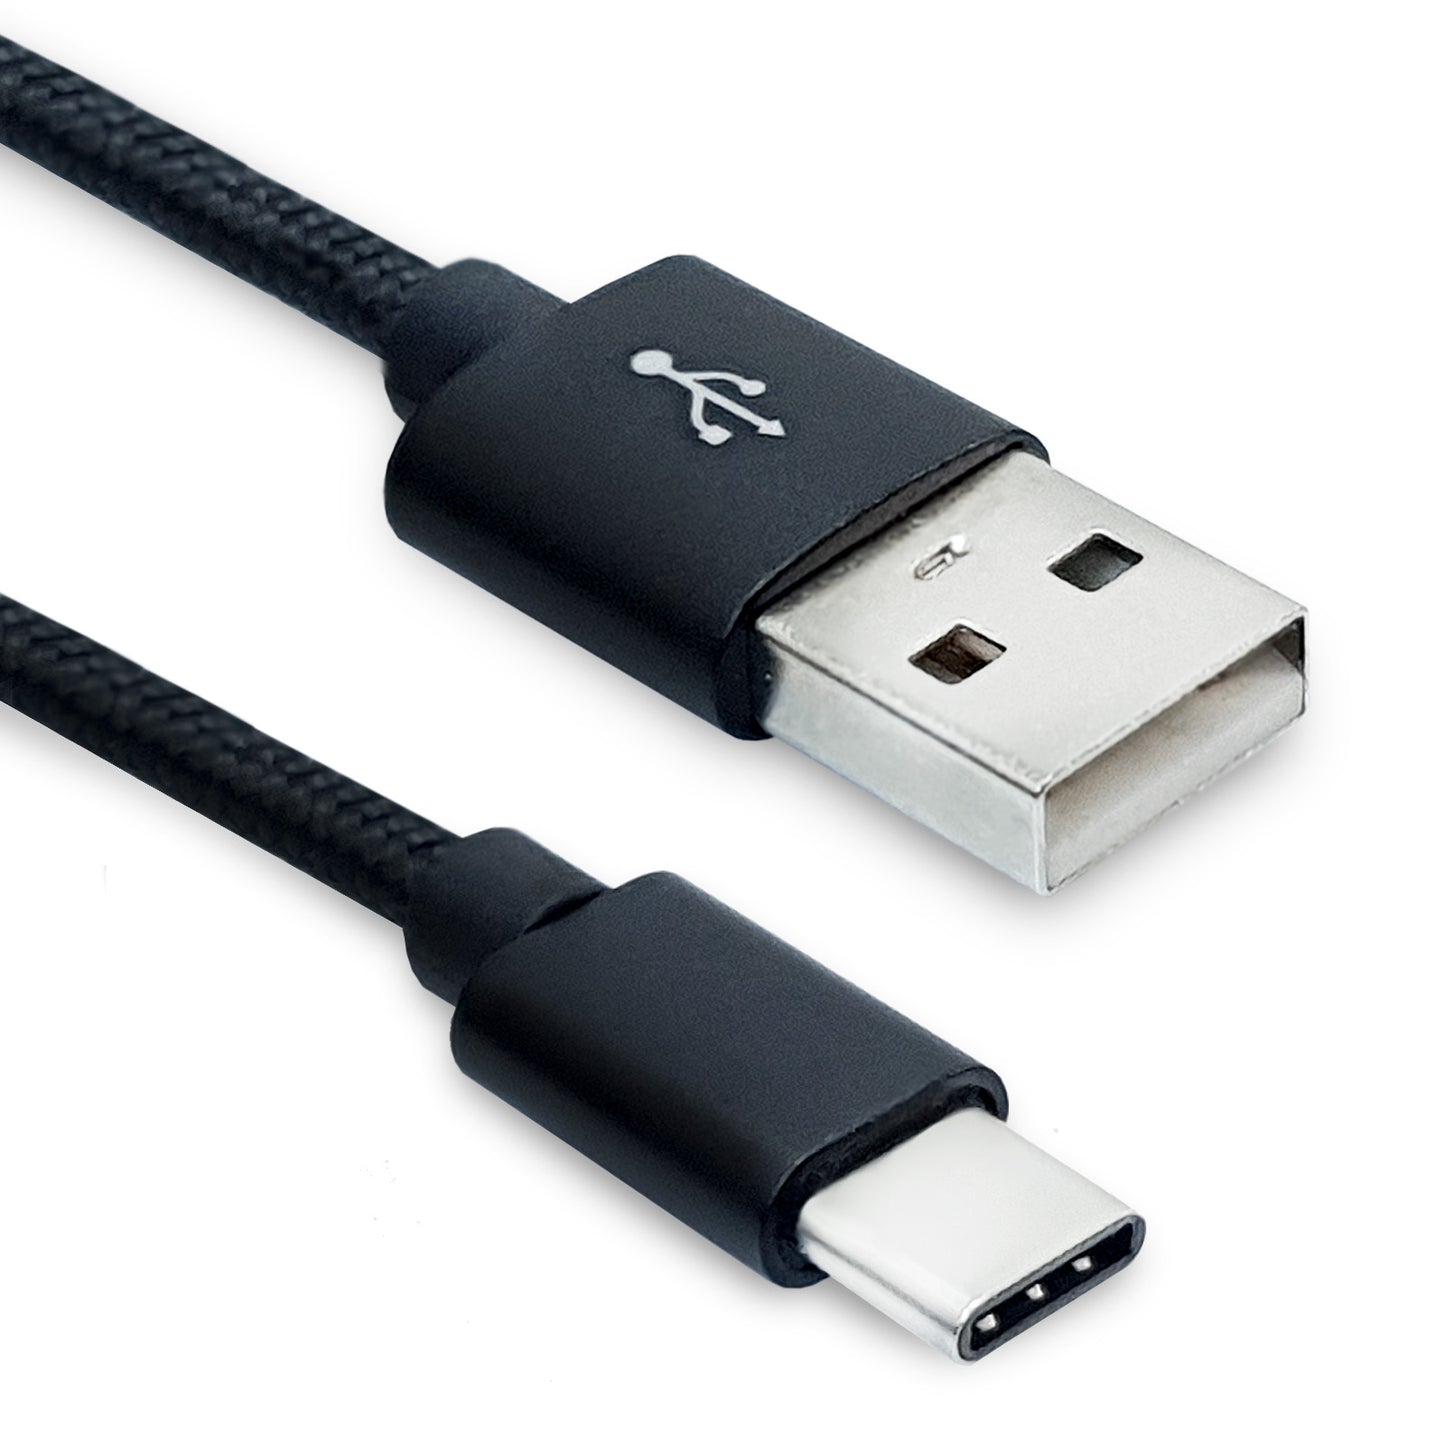 Verbinden Sie Ihr Typ-C Gerät mit Ihrem Computer oder Ladegerät mit diesem hochwertigen USB-C Daten- und Ladekabel. Jetzt bei Dinngs.de bestellen!